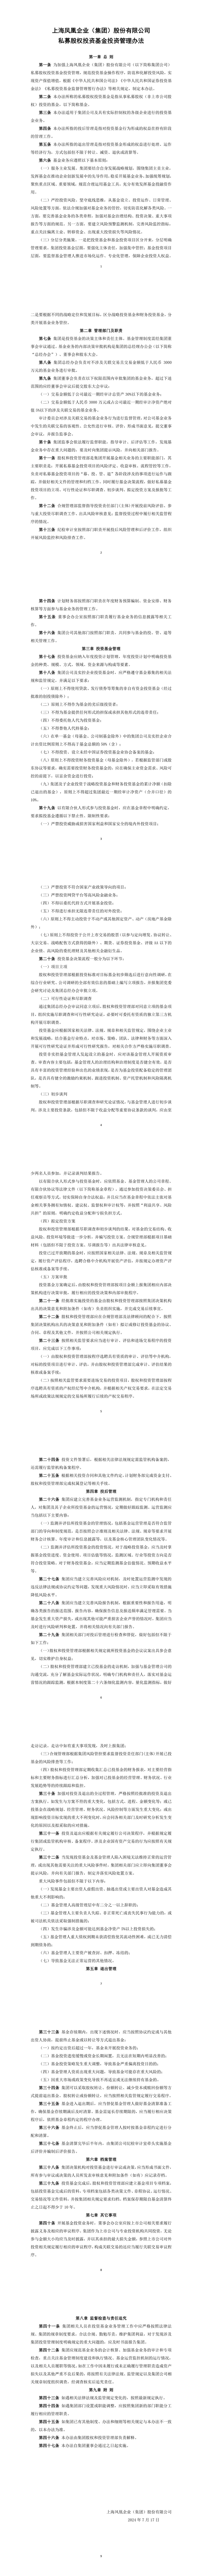 上海凤凰发布私募基金投资管理办法